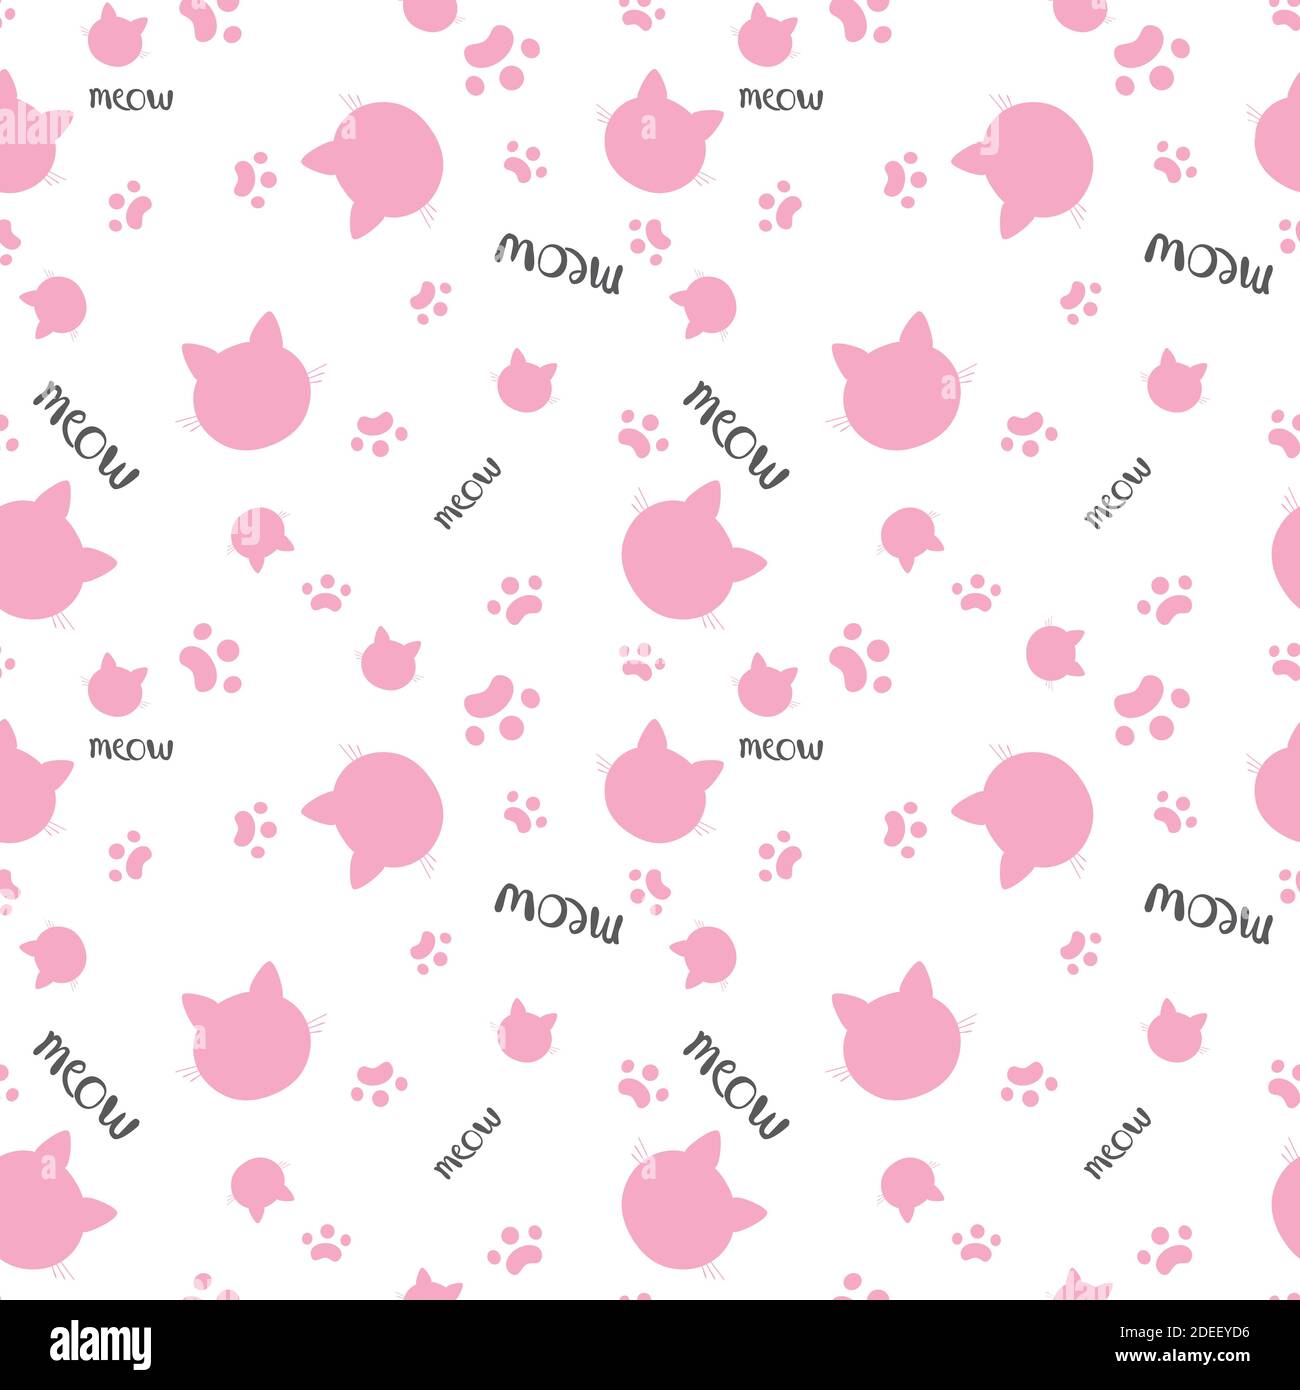 Nahtloses Muster aus rosa Katzenköpfen auf weißem Hintergrund. Vektorgrafik. Silhouette eines Tieres. Tapeten- und Stoffdesign und -Einrichtung. Stock Vektor